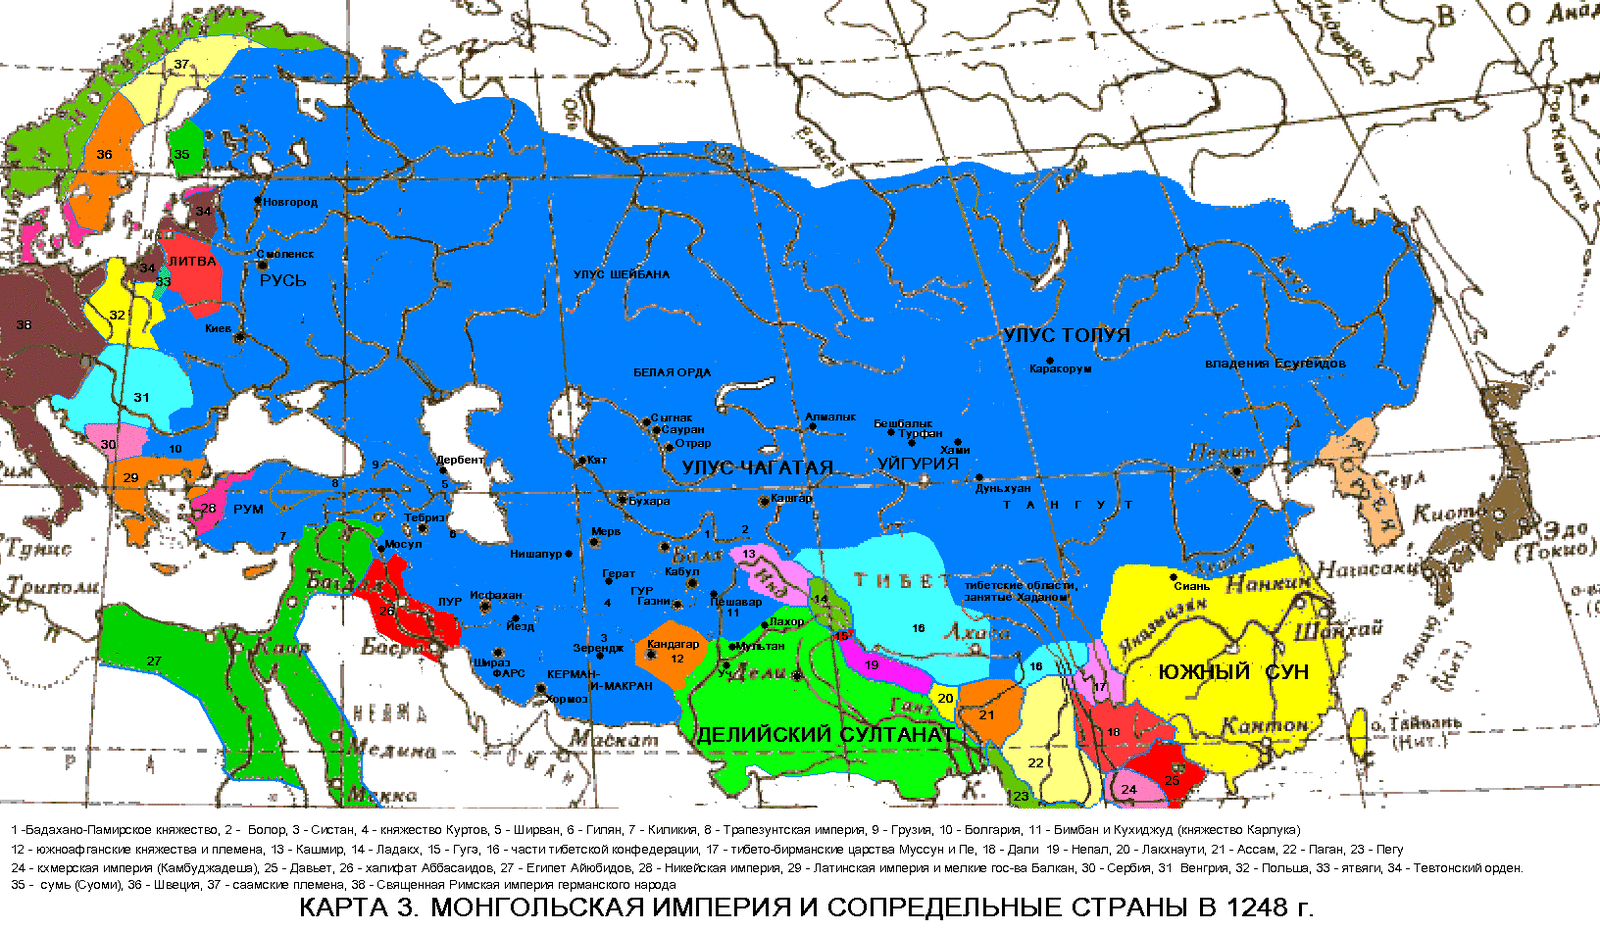 Монголия Империя карта Чингисхана